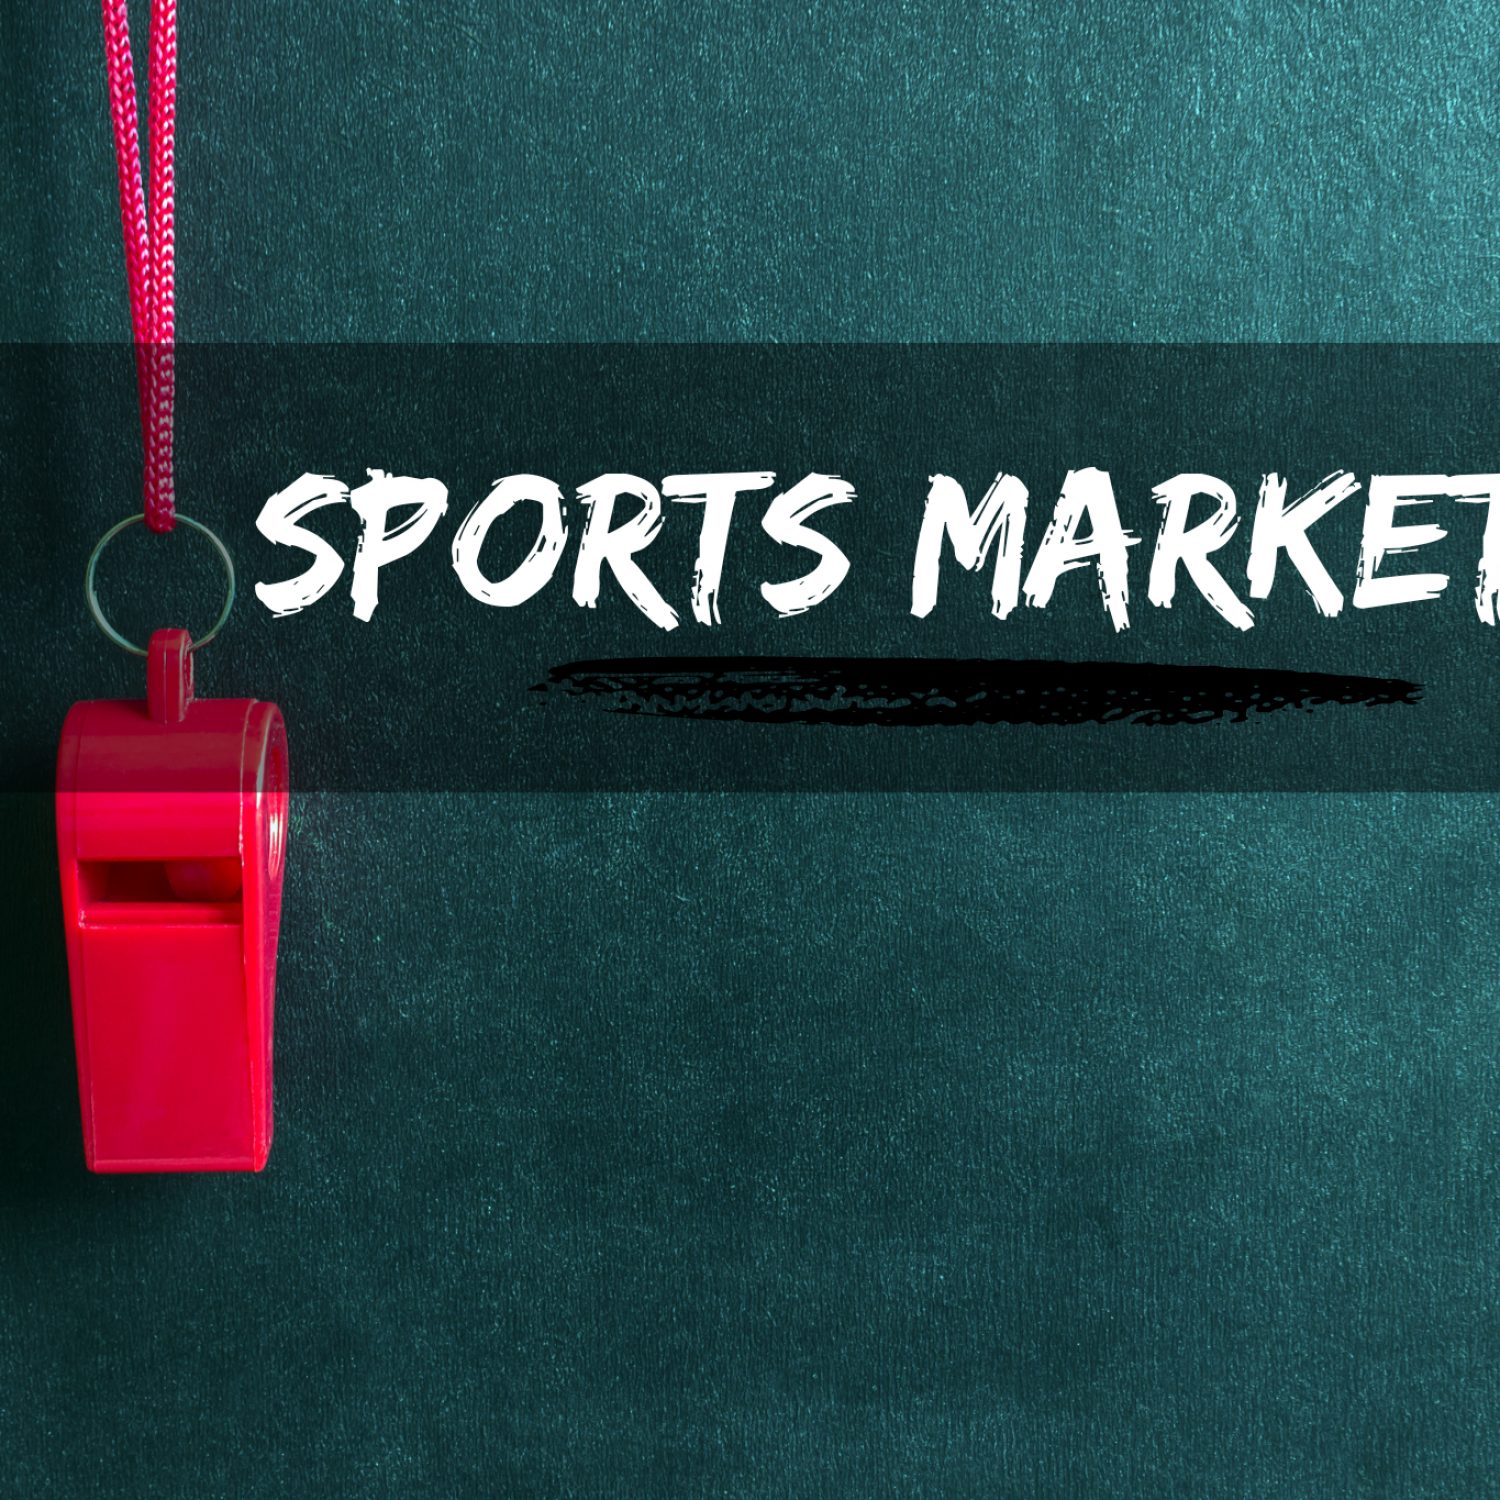 Sports Marketing Jobs